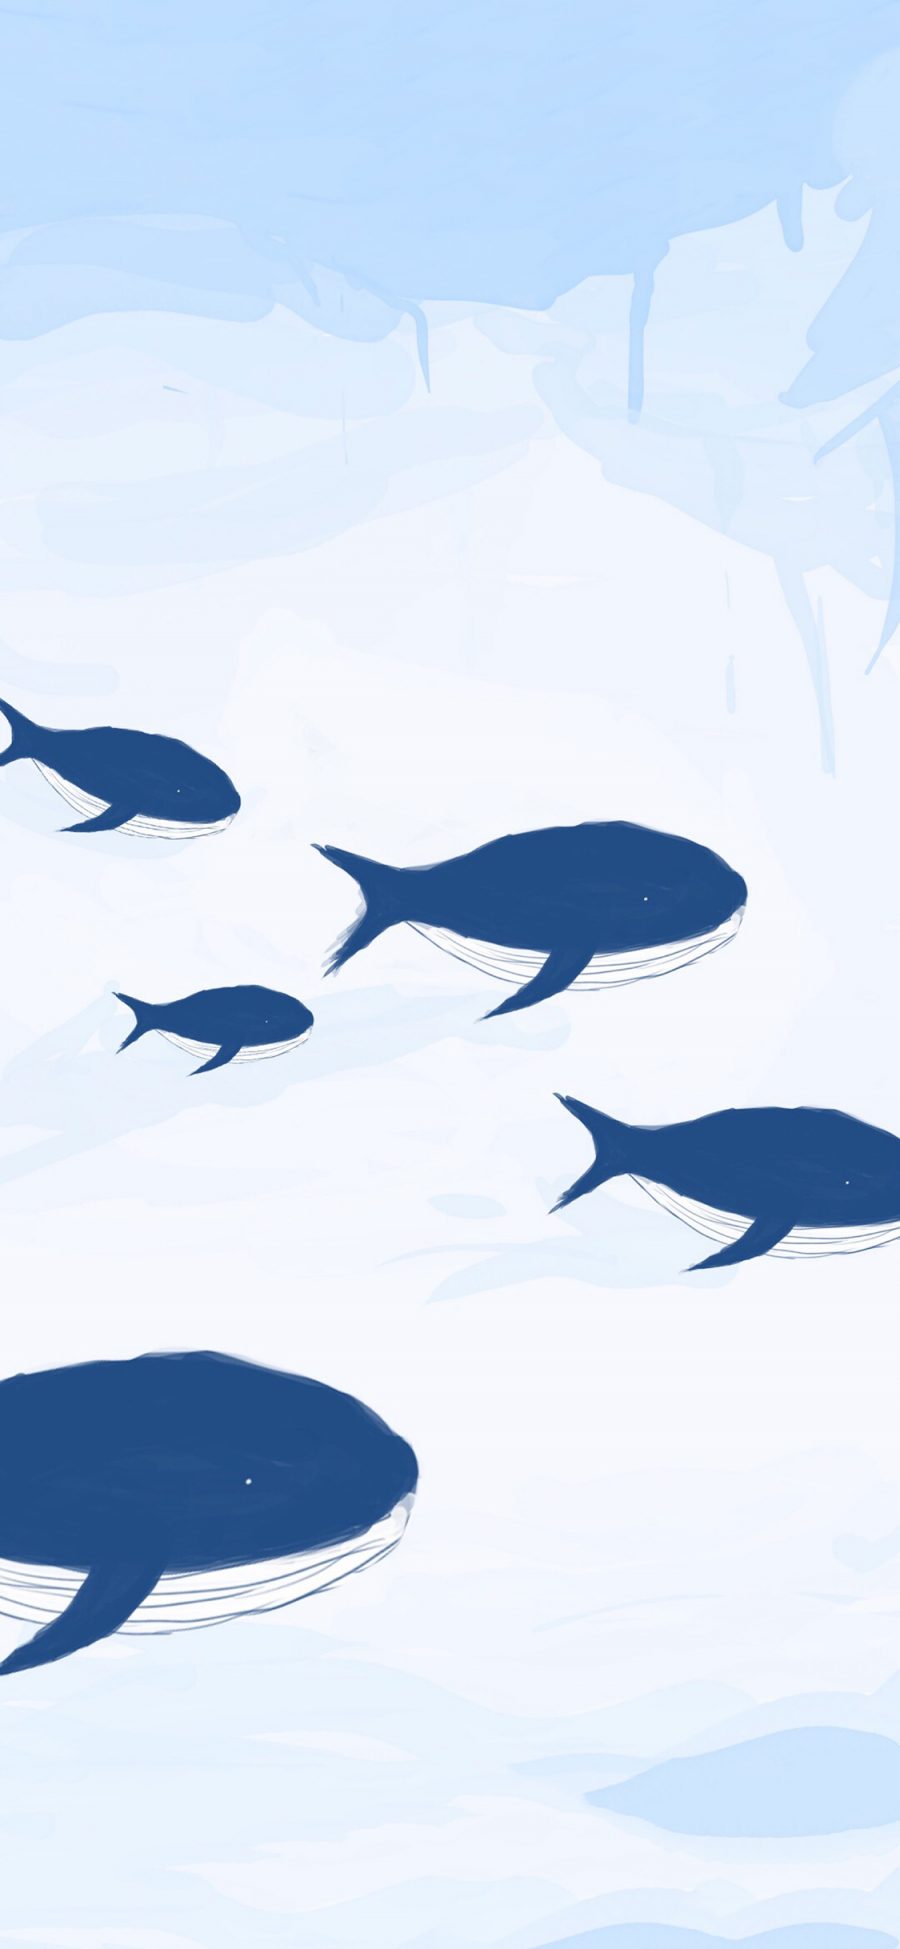 [2436×1125]插图 鲸鱼 蓝色 大小 苹果手机动漫壁纸图片